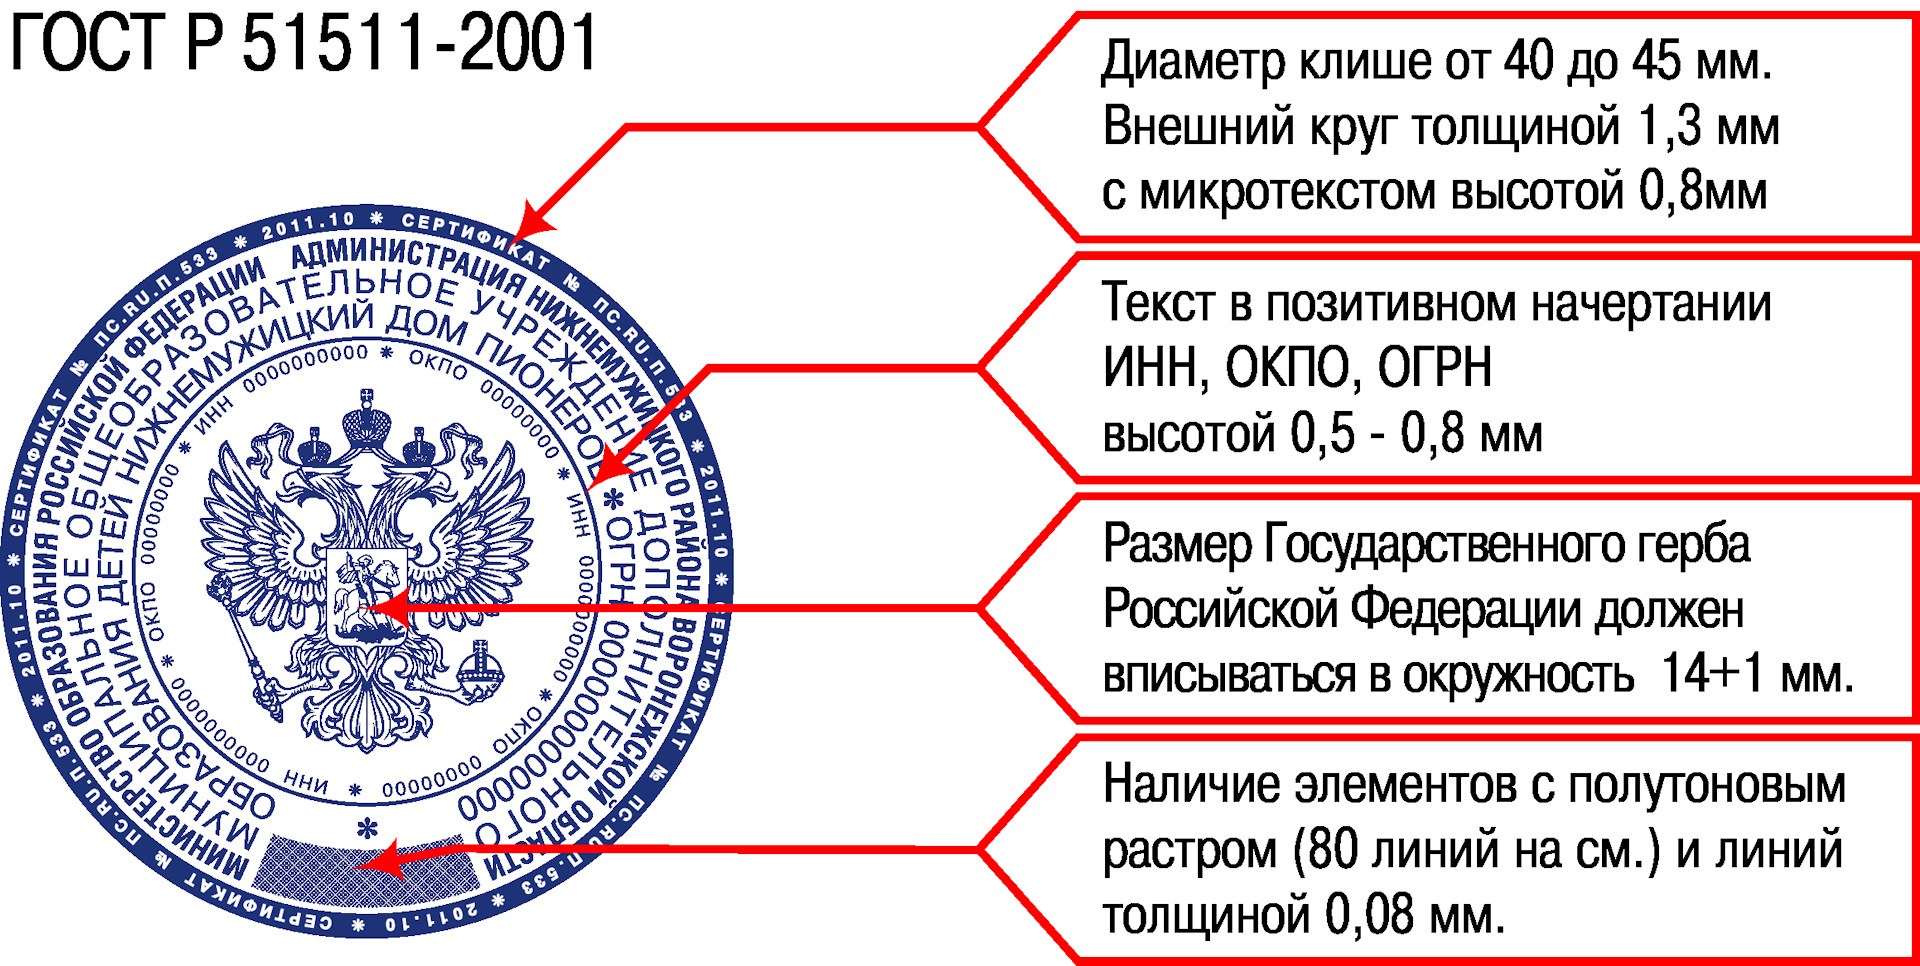 ГОСТ Р 51511-2001 печати с воспроизведением государственного герба РФ